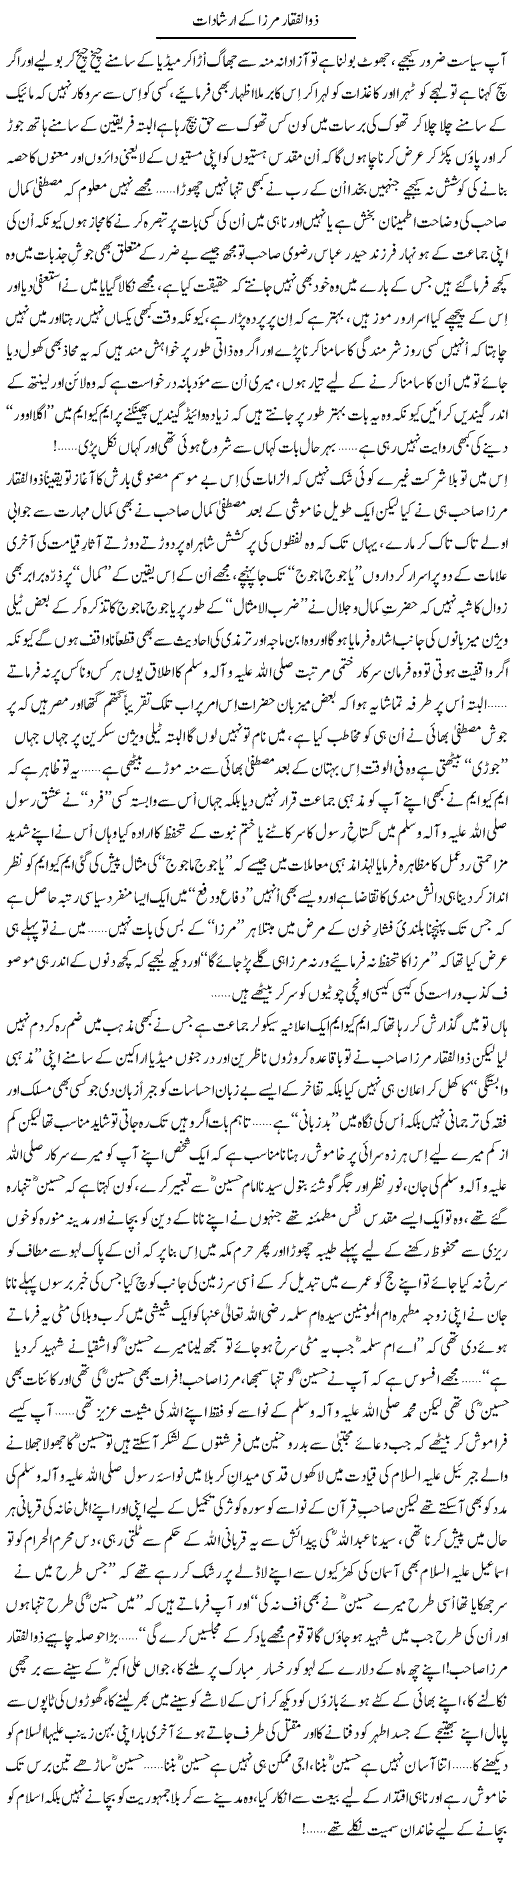 Statements of Zulfiqar Mirza - Urdu Column By Aamir Liaquat